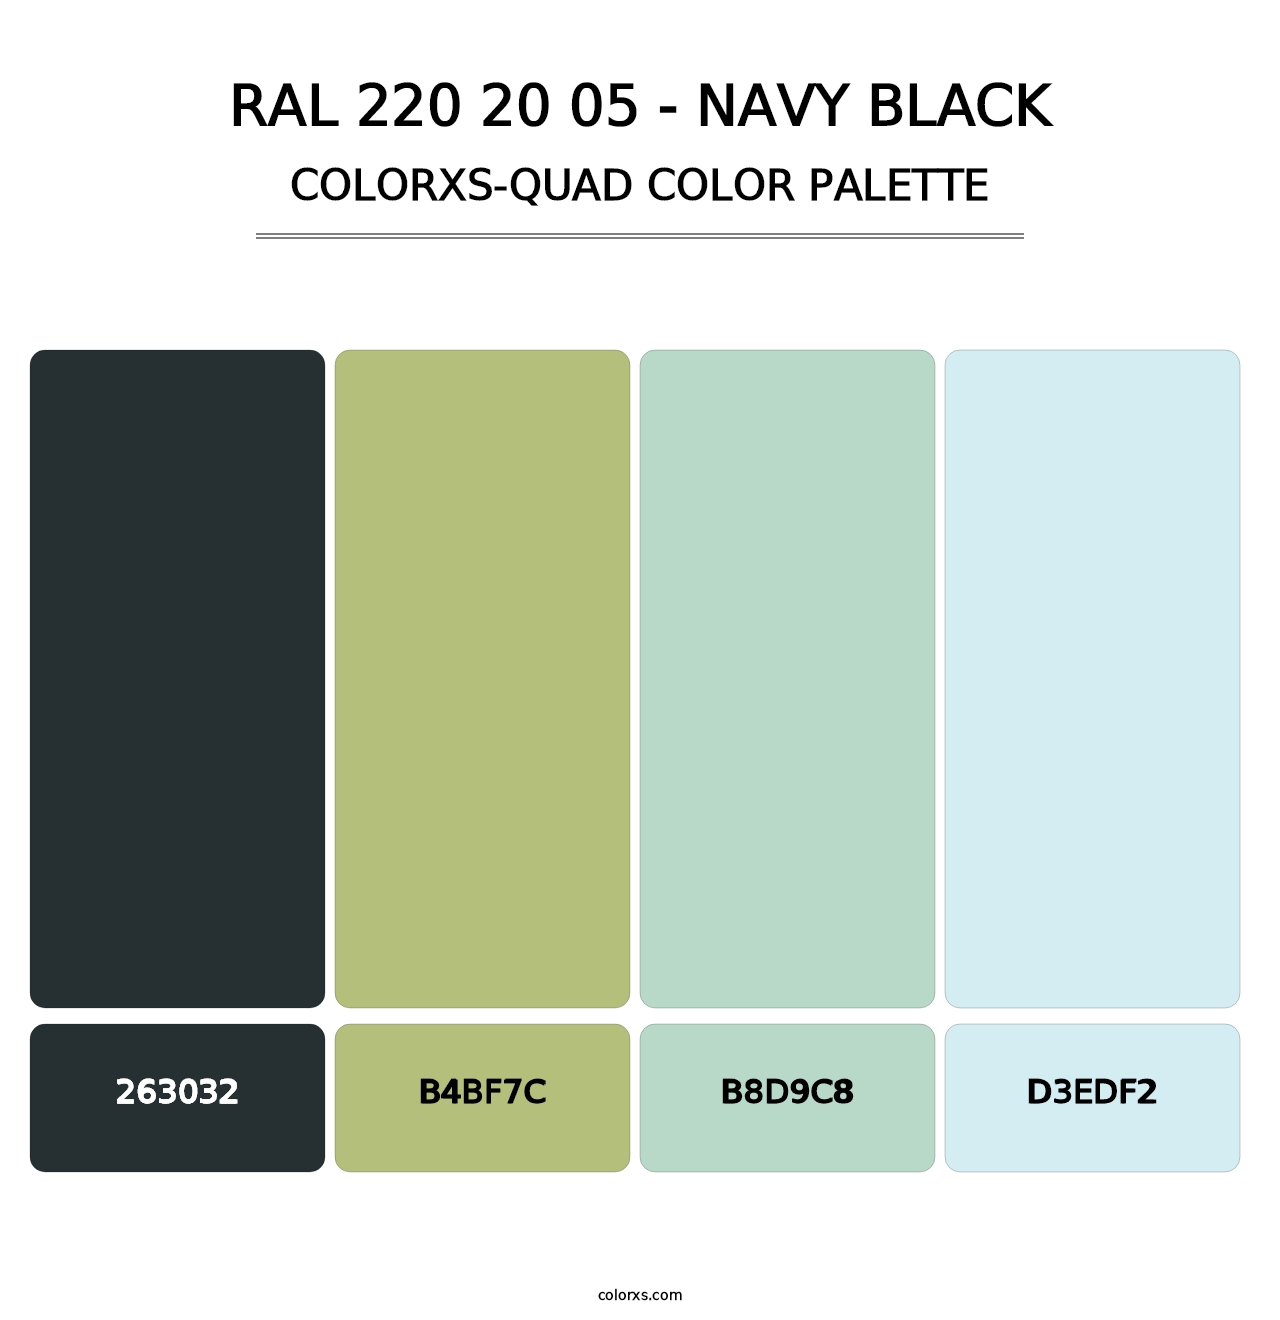 RAL 220 20 05 - Navy Black - Colorxs Quad Palette